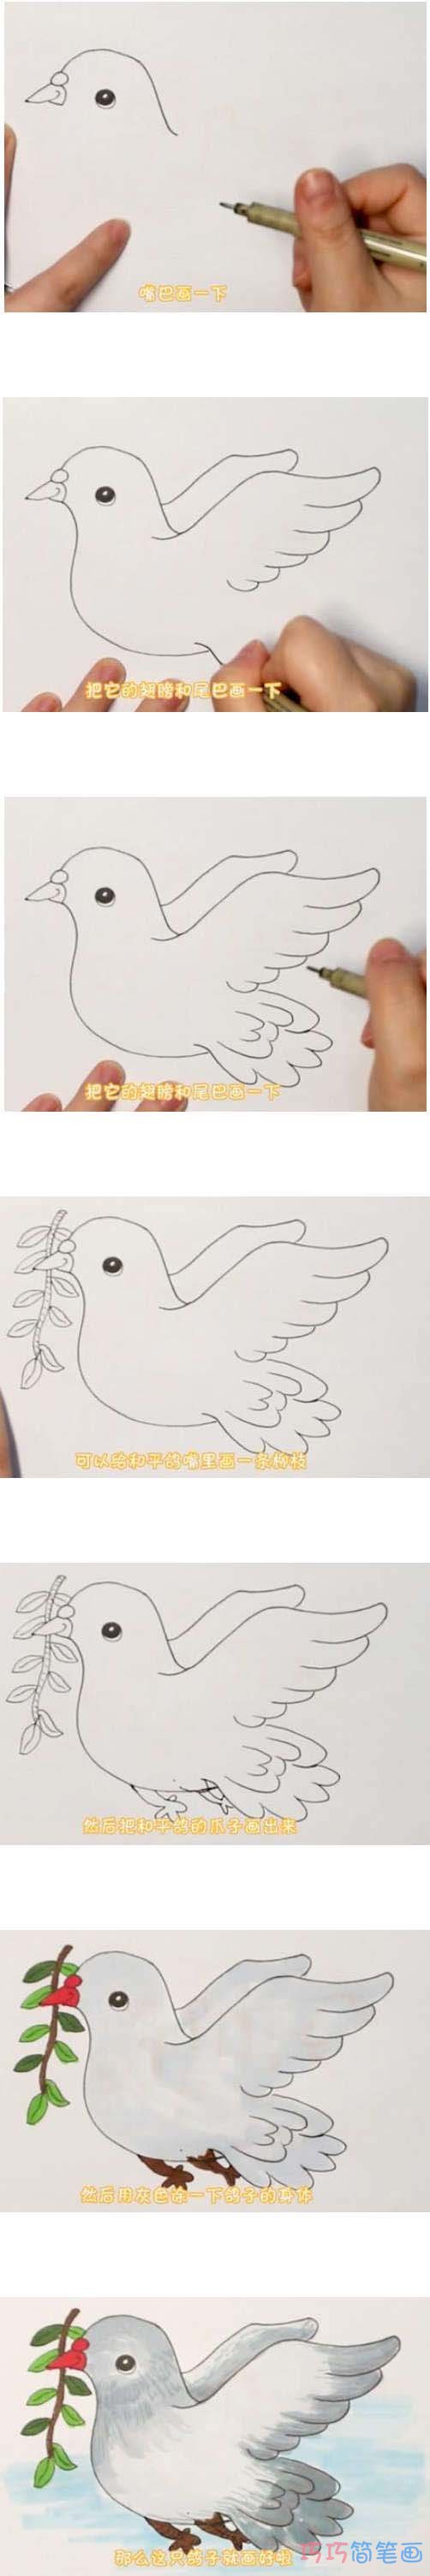 教你一步一步手绘和平鸽简笔画涂色简单漂亮